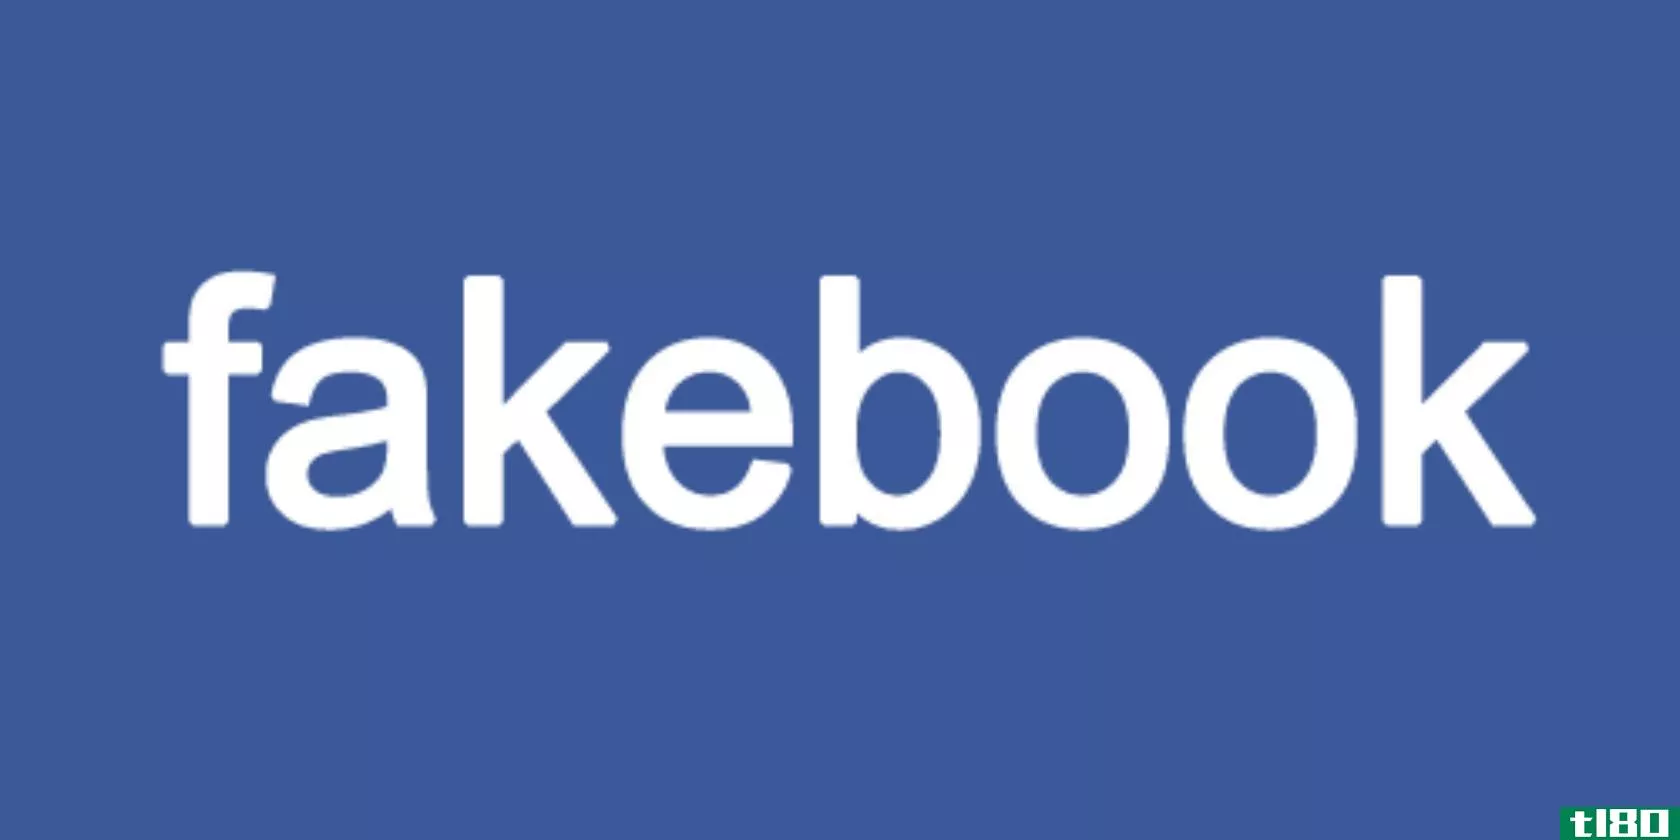 fakebook-logo